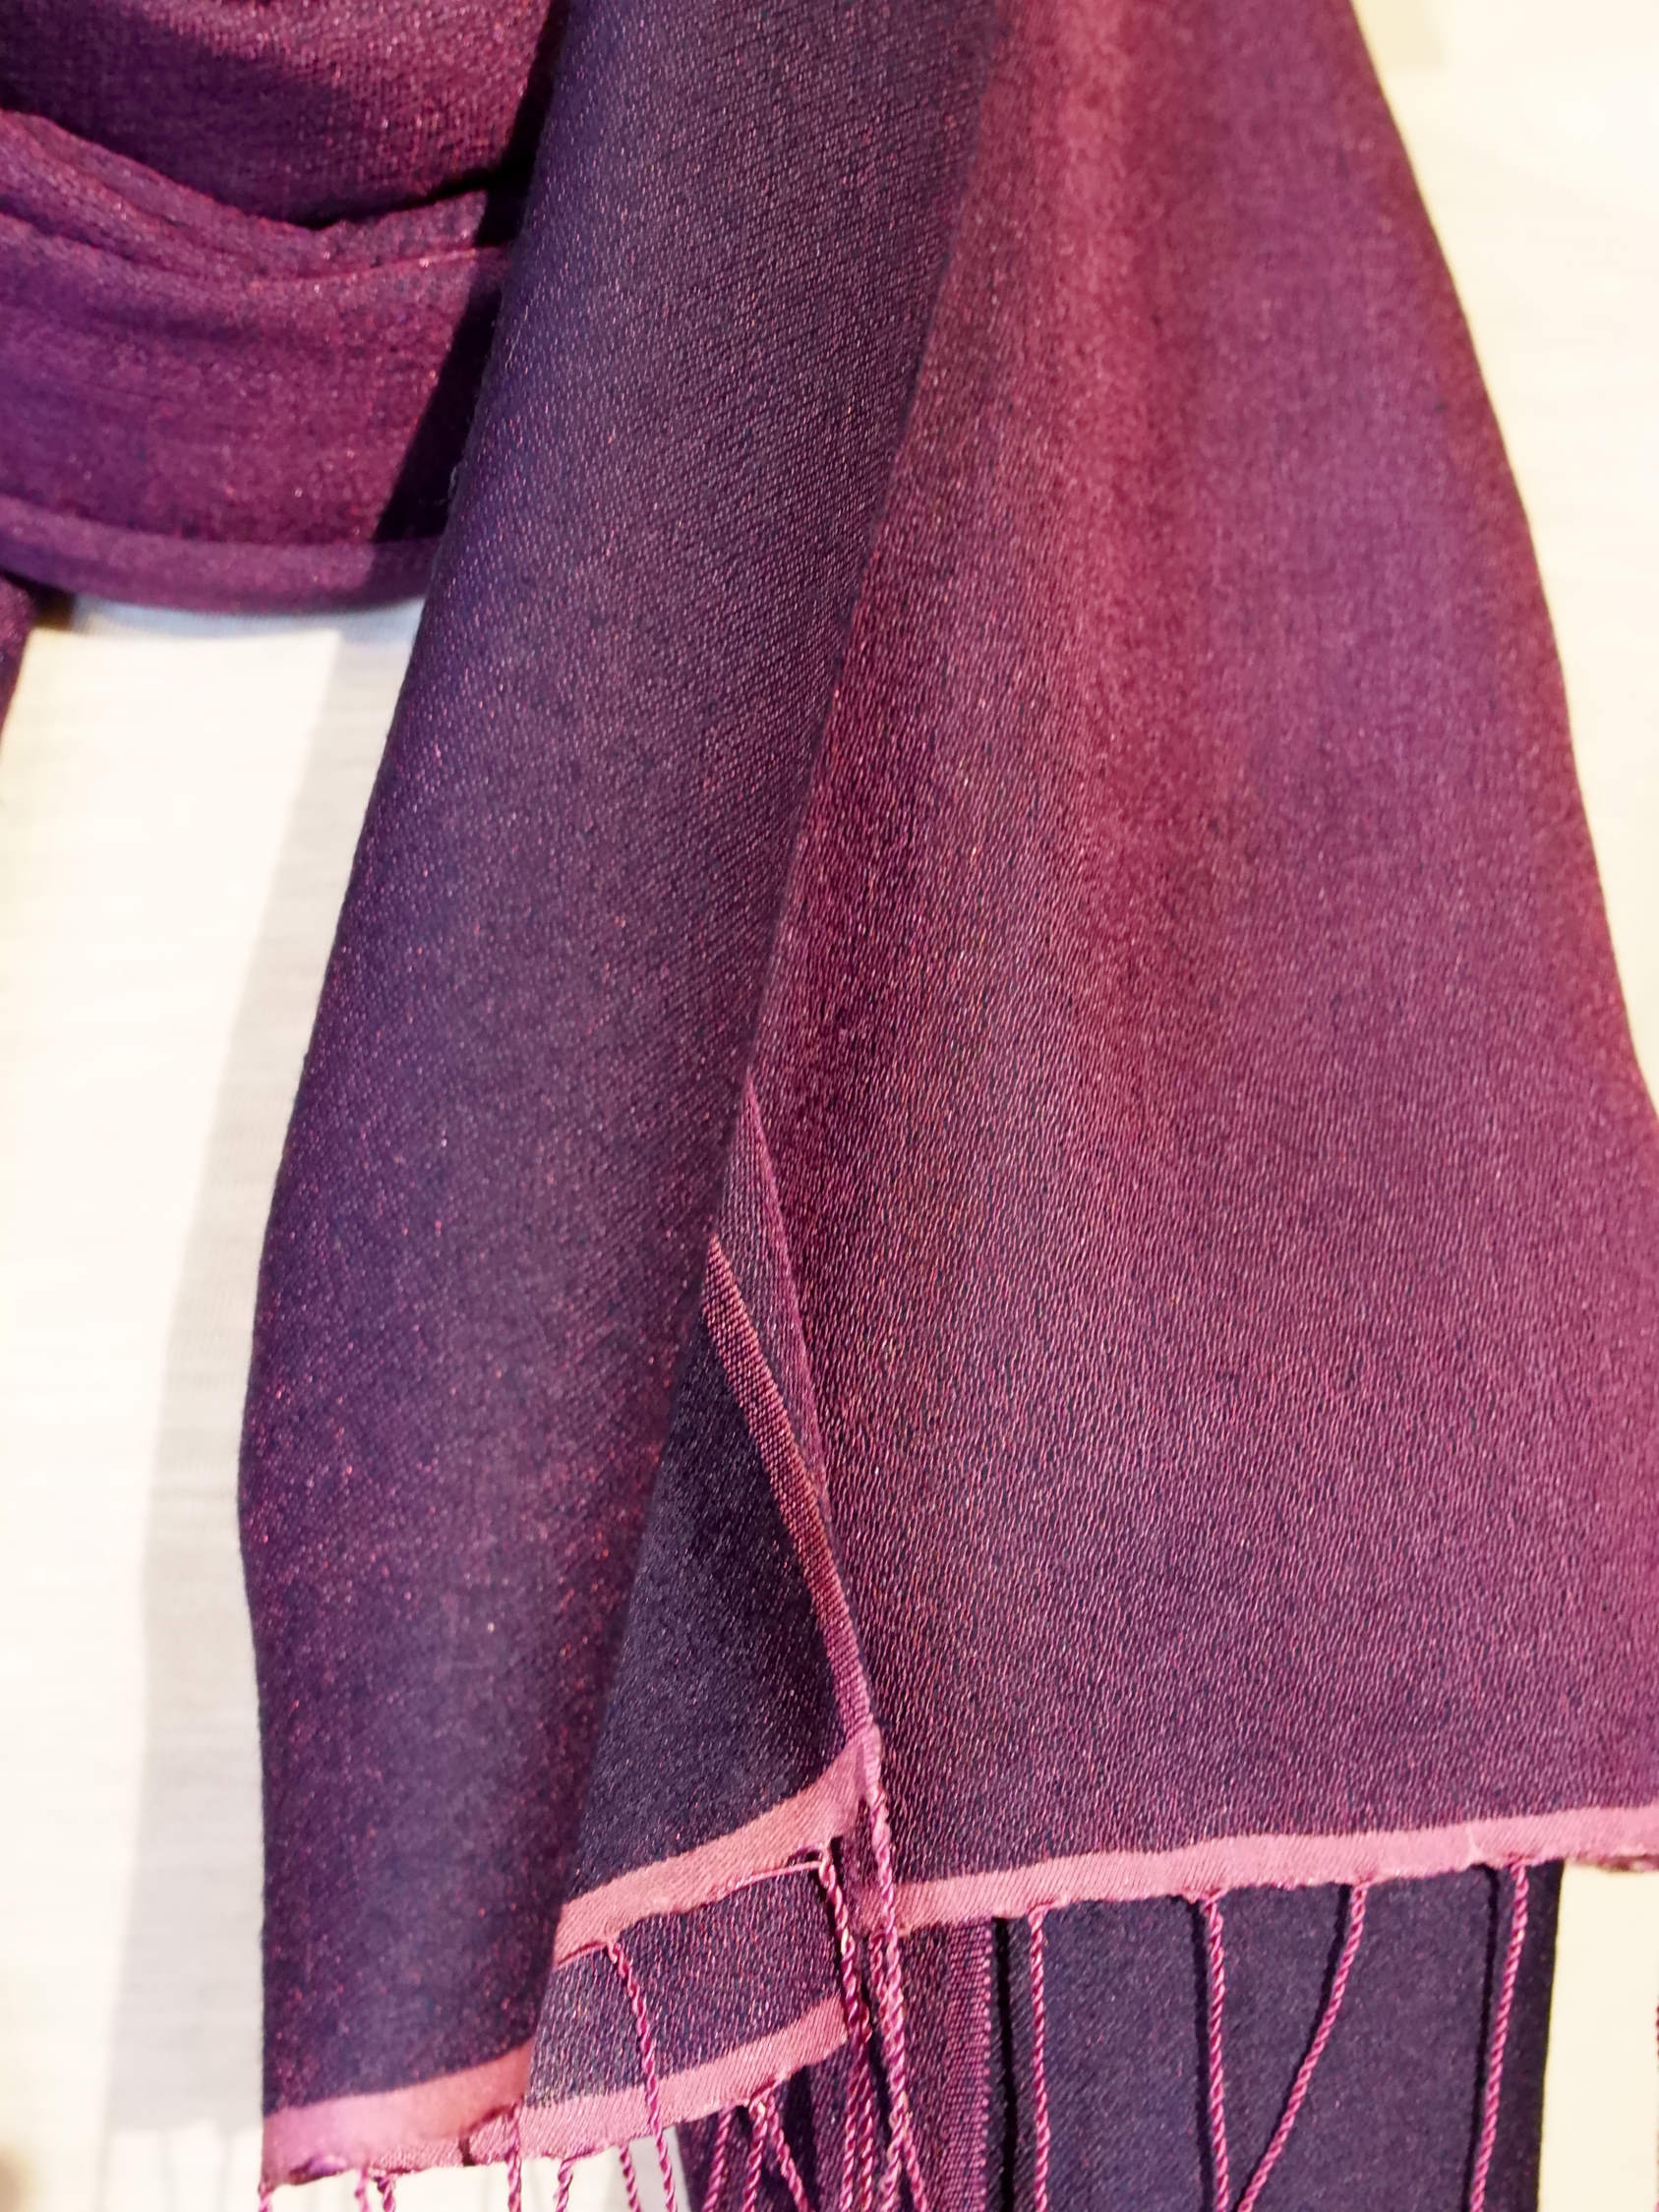 scialle in seta e lana di color viola chiaro e scuro.  pezzo unico.  peso 115 grammi, dimensioni 70x200cm.